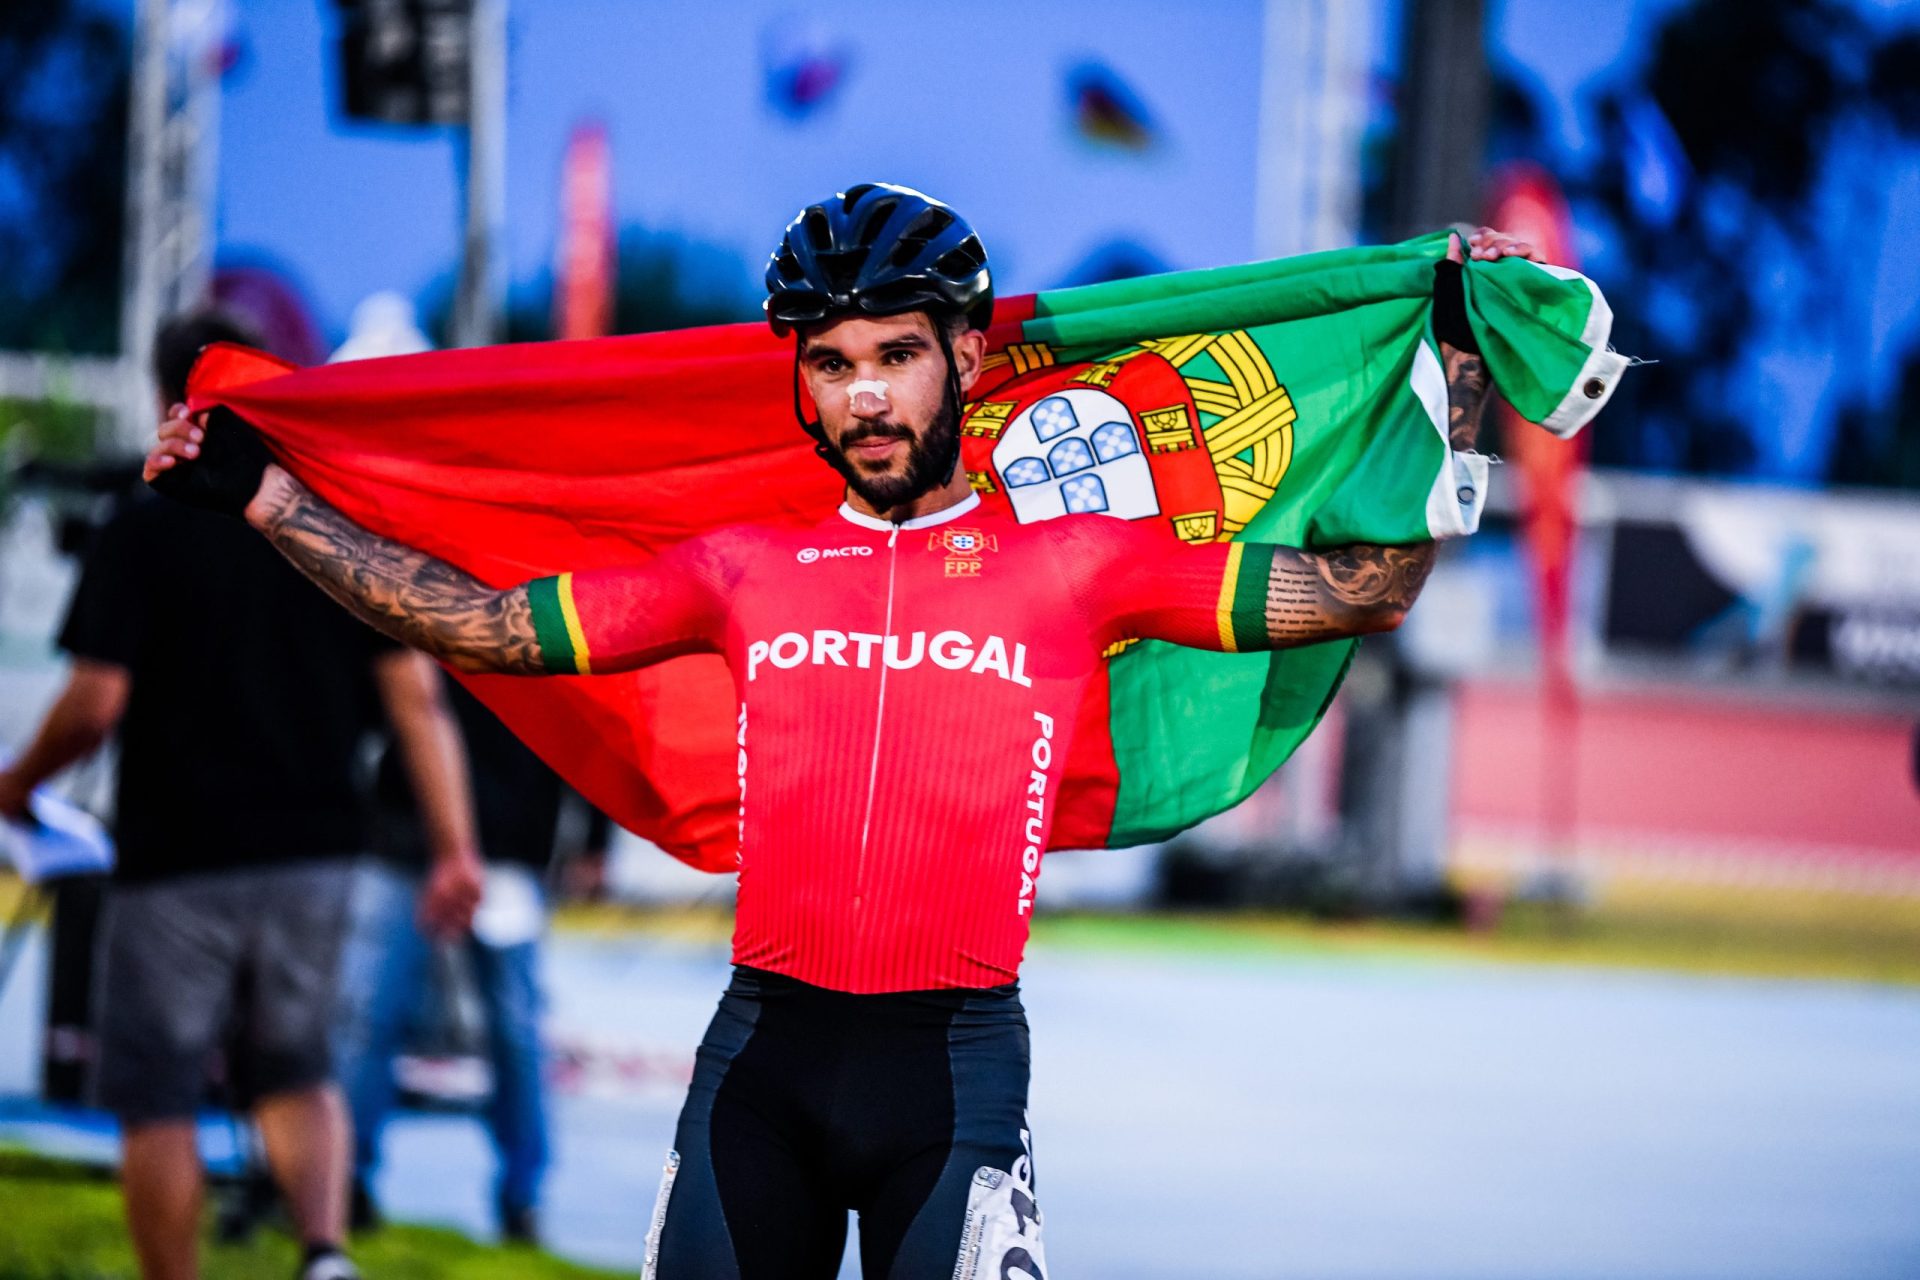 Portugal conquista primeira medalha de ouro em seniores na história da patinagem de velocidade